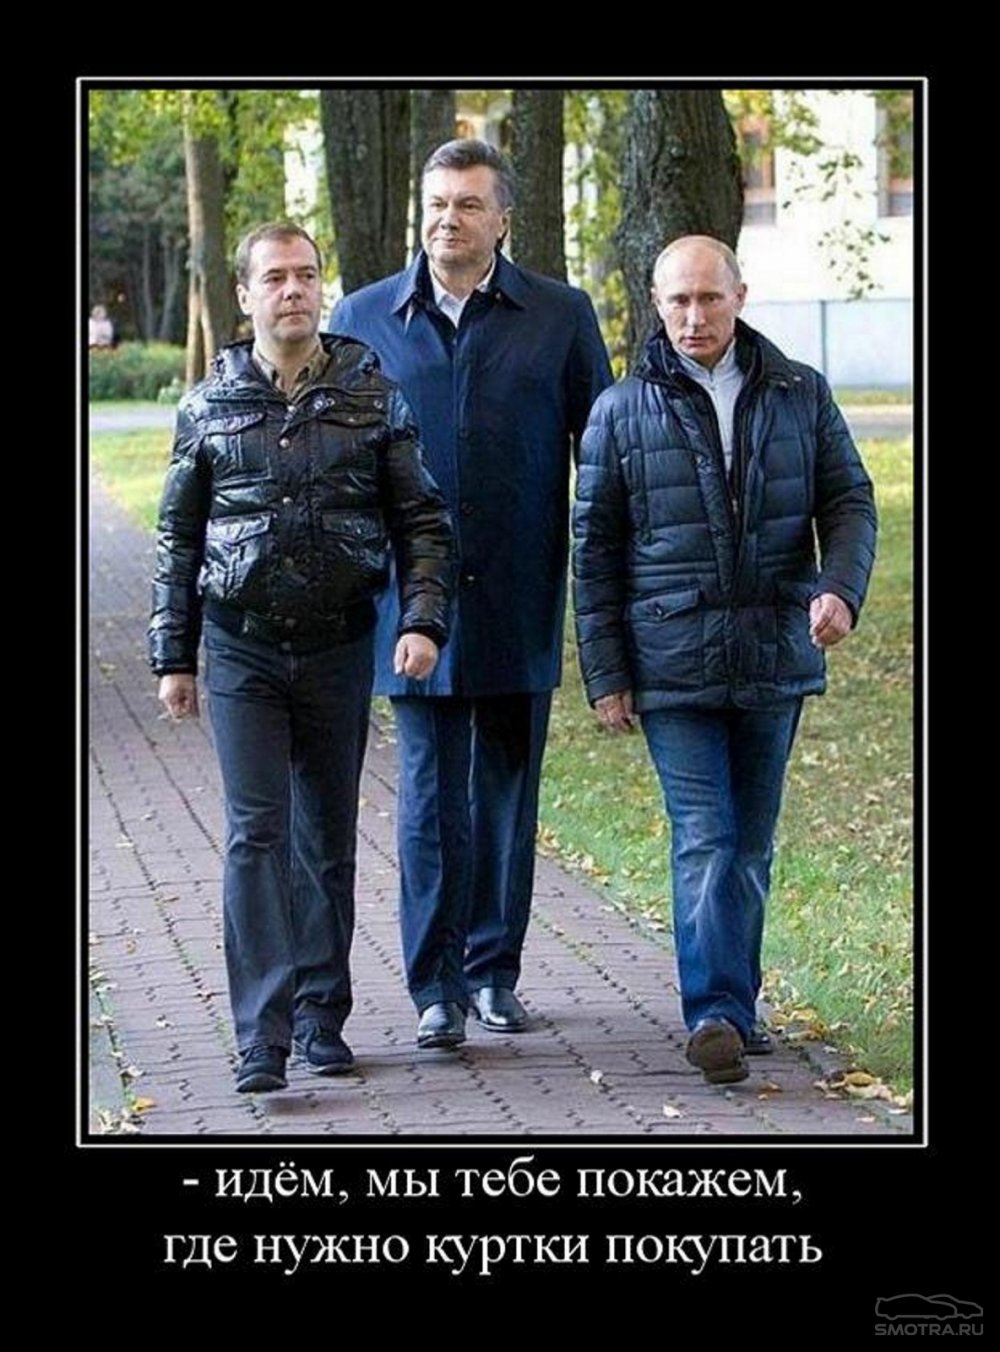 Янукович Путин и Медведев